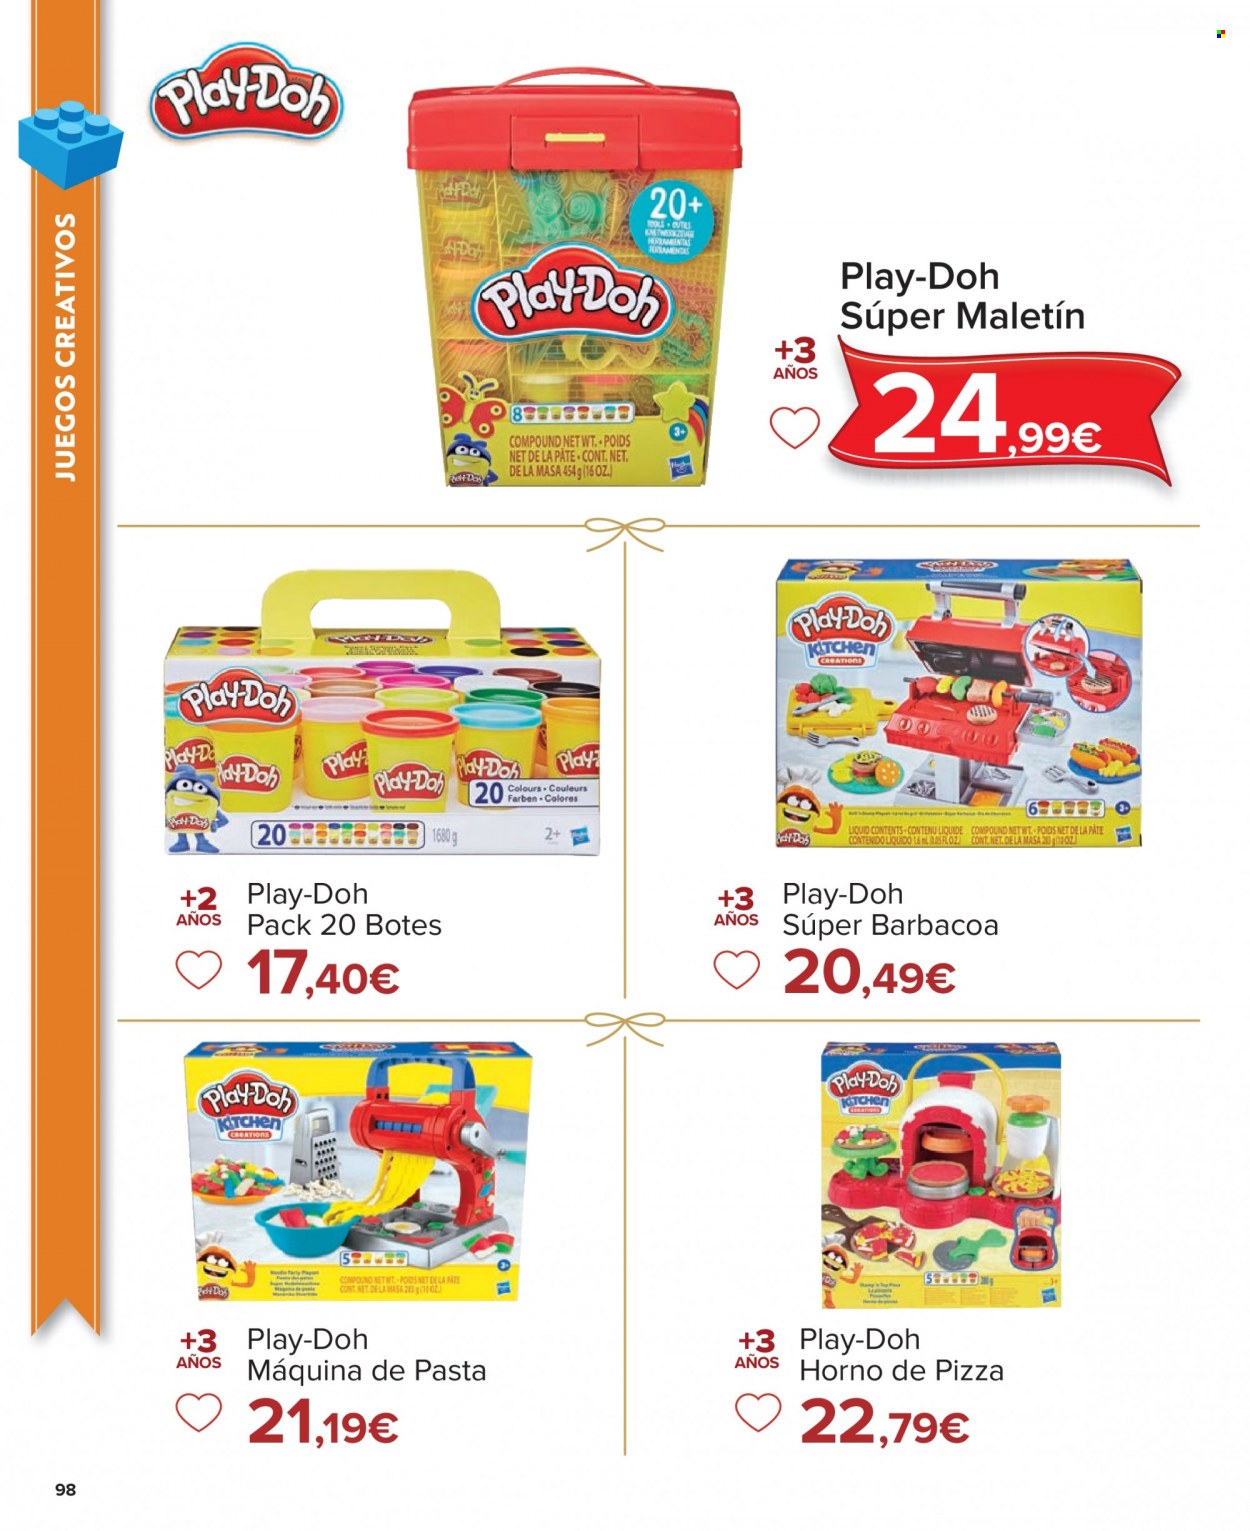 thumbnail - Folleto actual Carrefour - 04/11/22 - 24/12/22 - Ventas - Play-Doh, horno. Página 98.